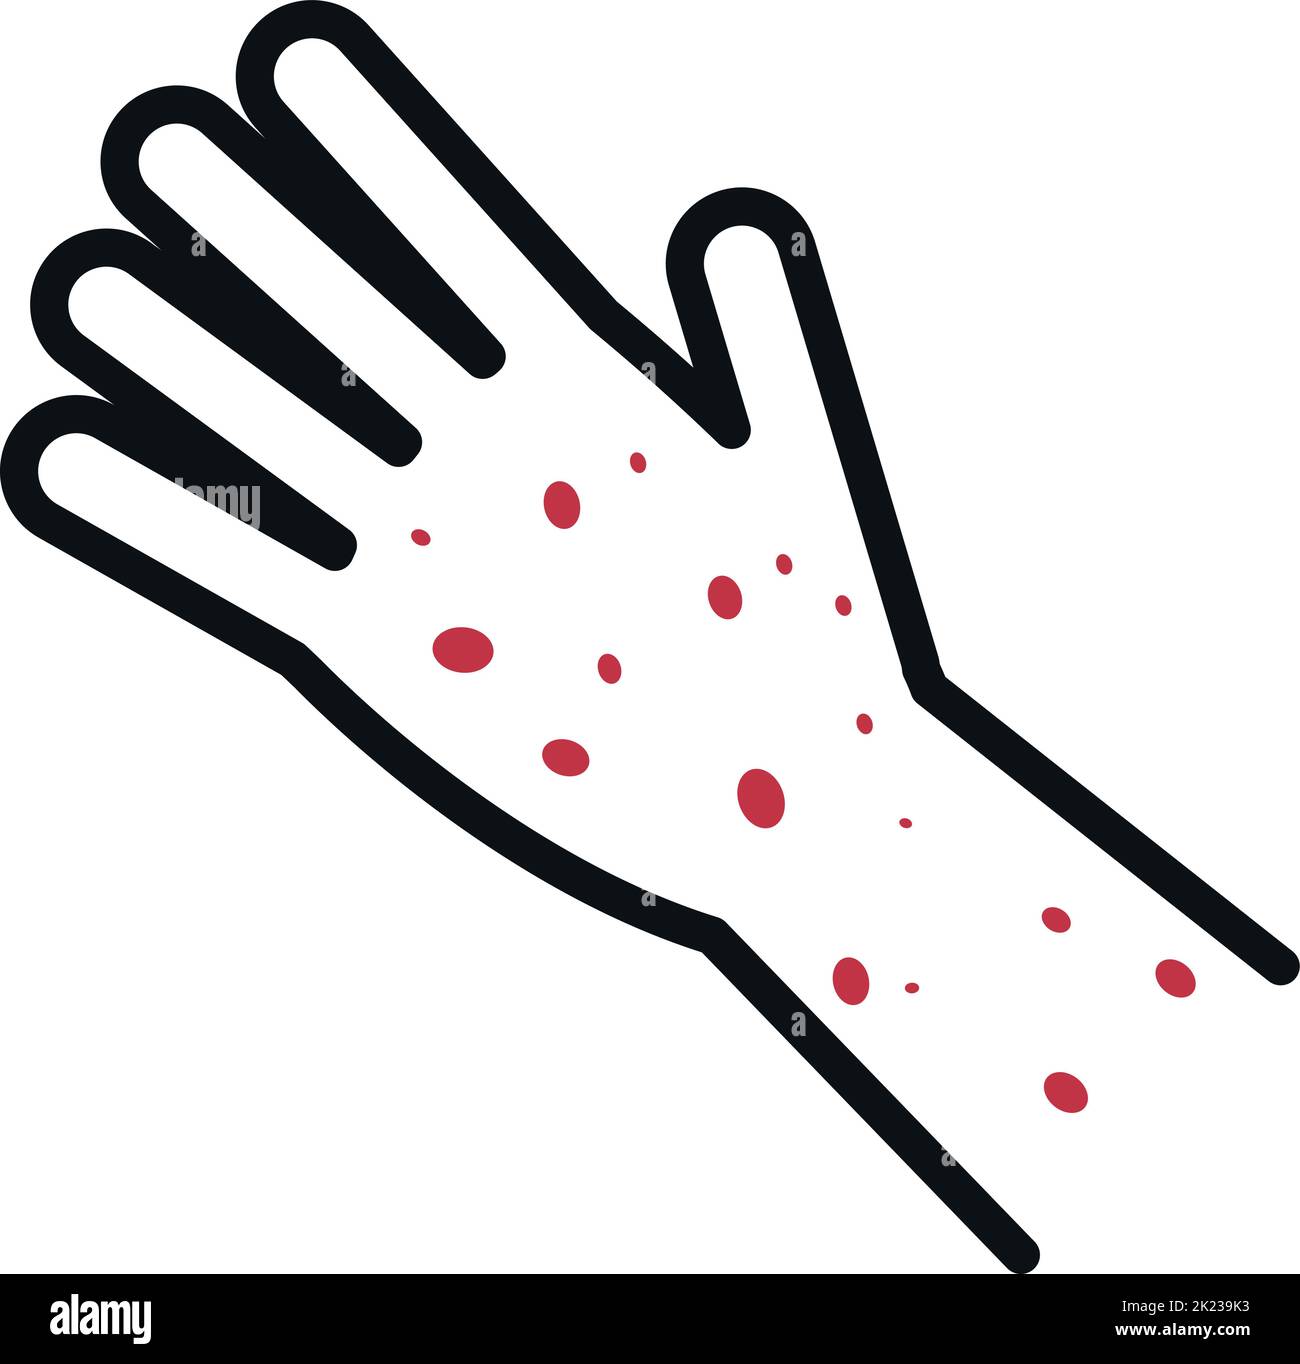 Eruzione cutanea rossa sulla mano umana. Icona del sintomo della malattia Illustrazione Vettoriale